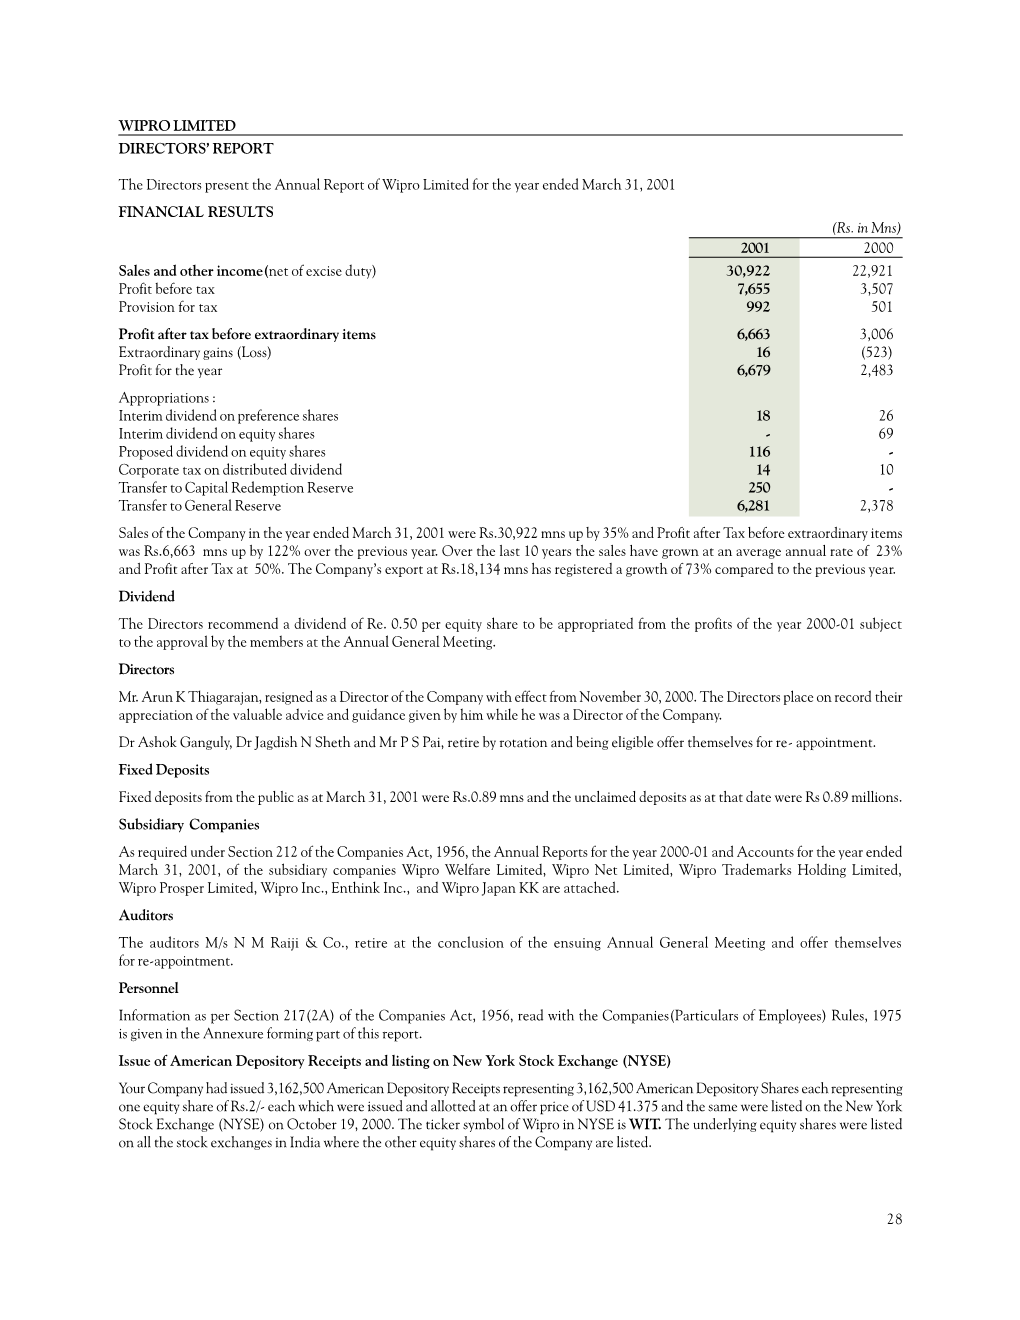 Financials(PDF)